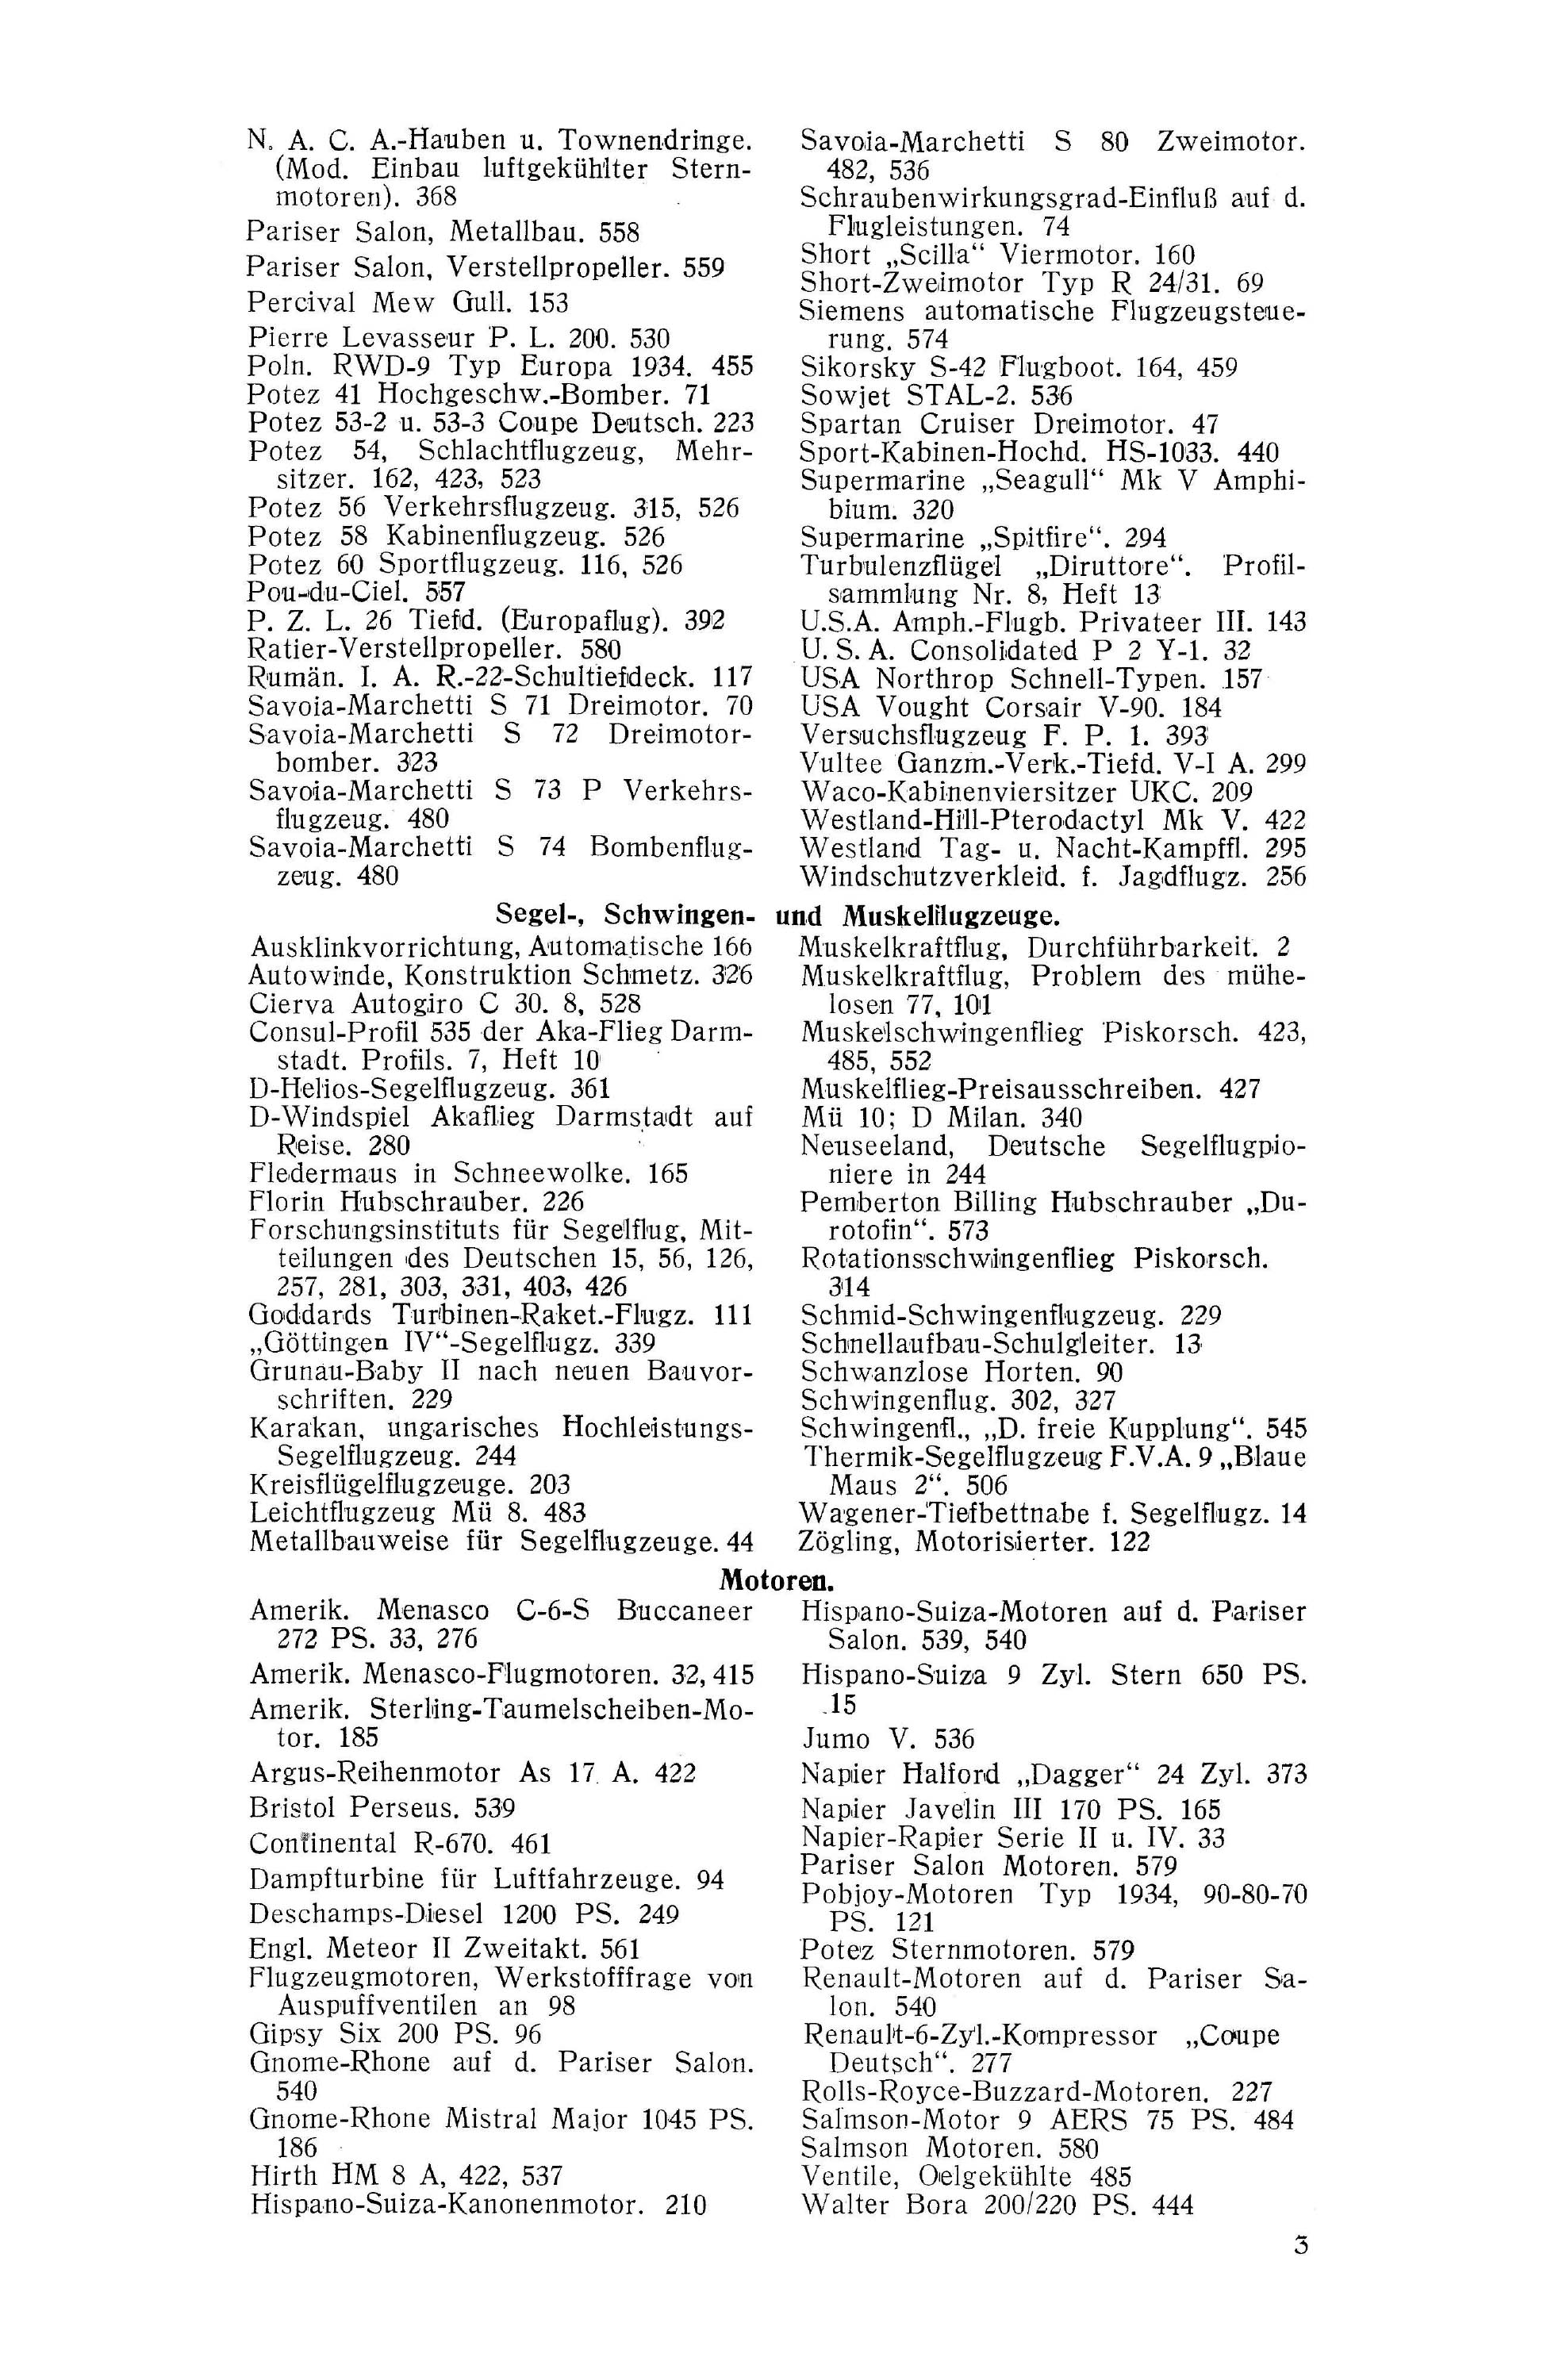 Sachregister und Inhaltsverzeichnis der Zeitschrift Flugsport 1934